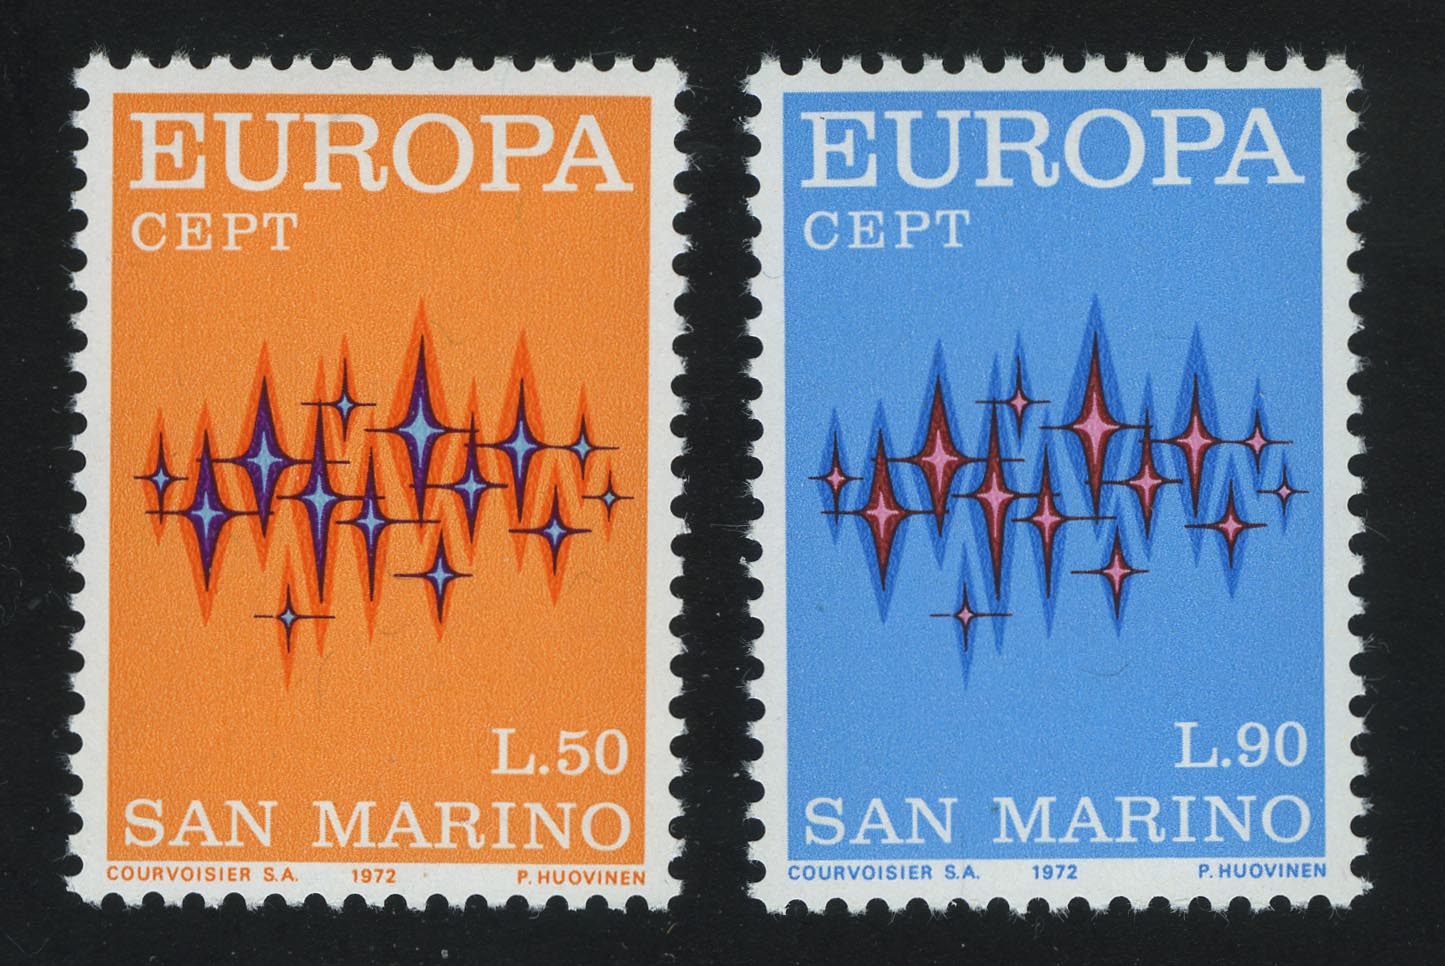 997 998. Cept. Michel Europa cept. Stars 1972.